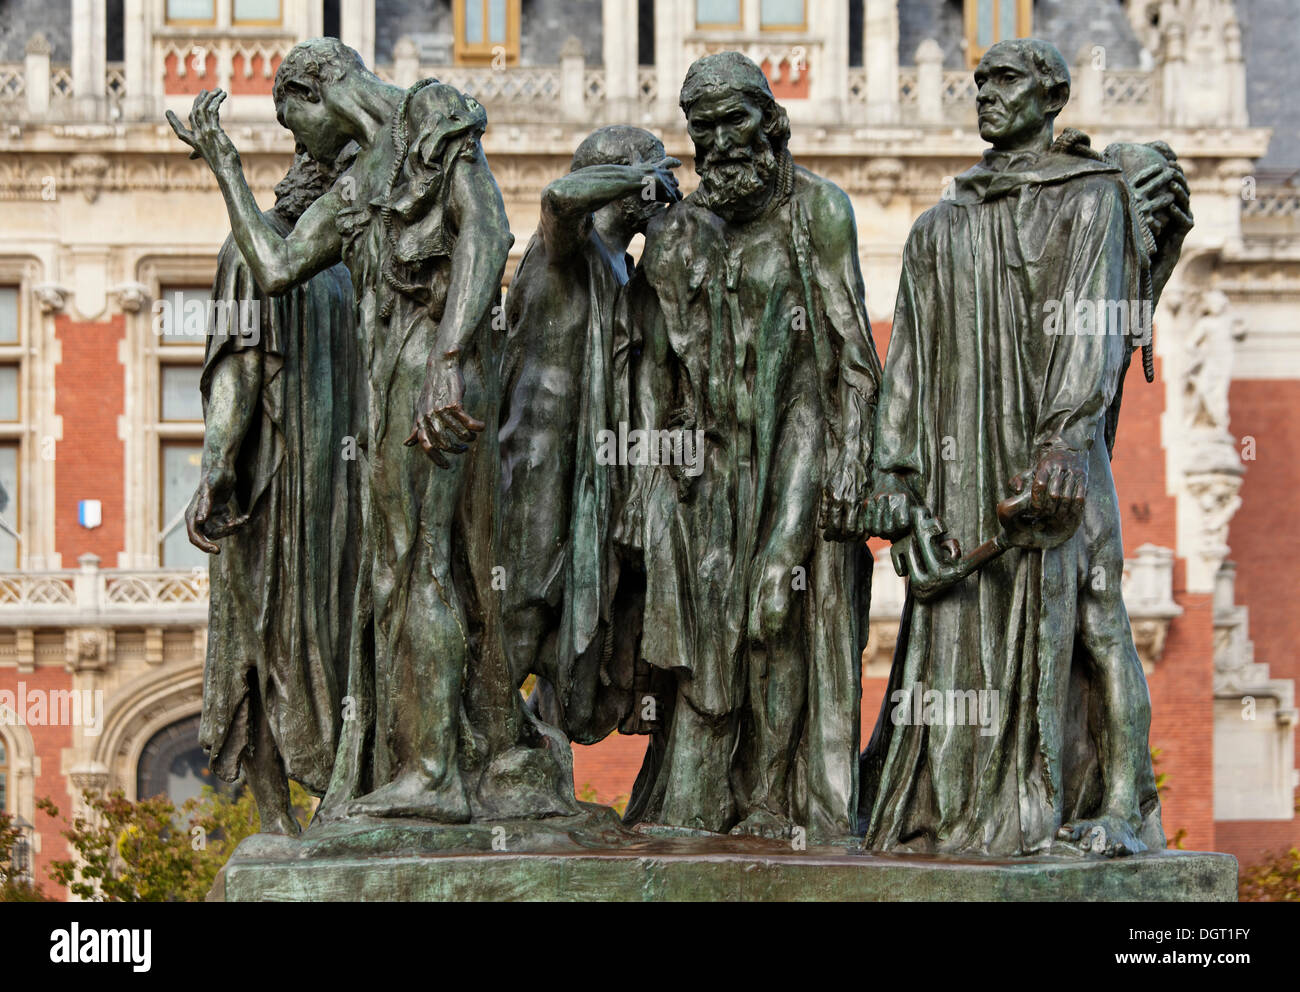 Escultura de Auguste Rodin los burgueses de Calais en la plaza Place de l Hôtel de Ville en